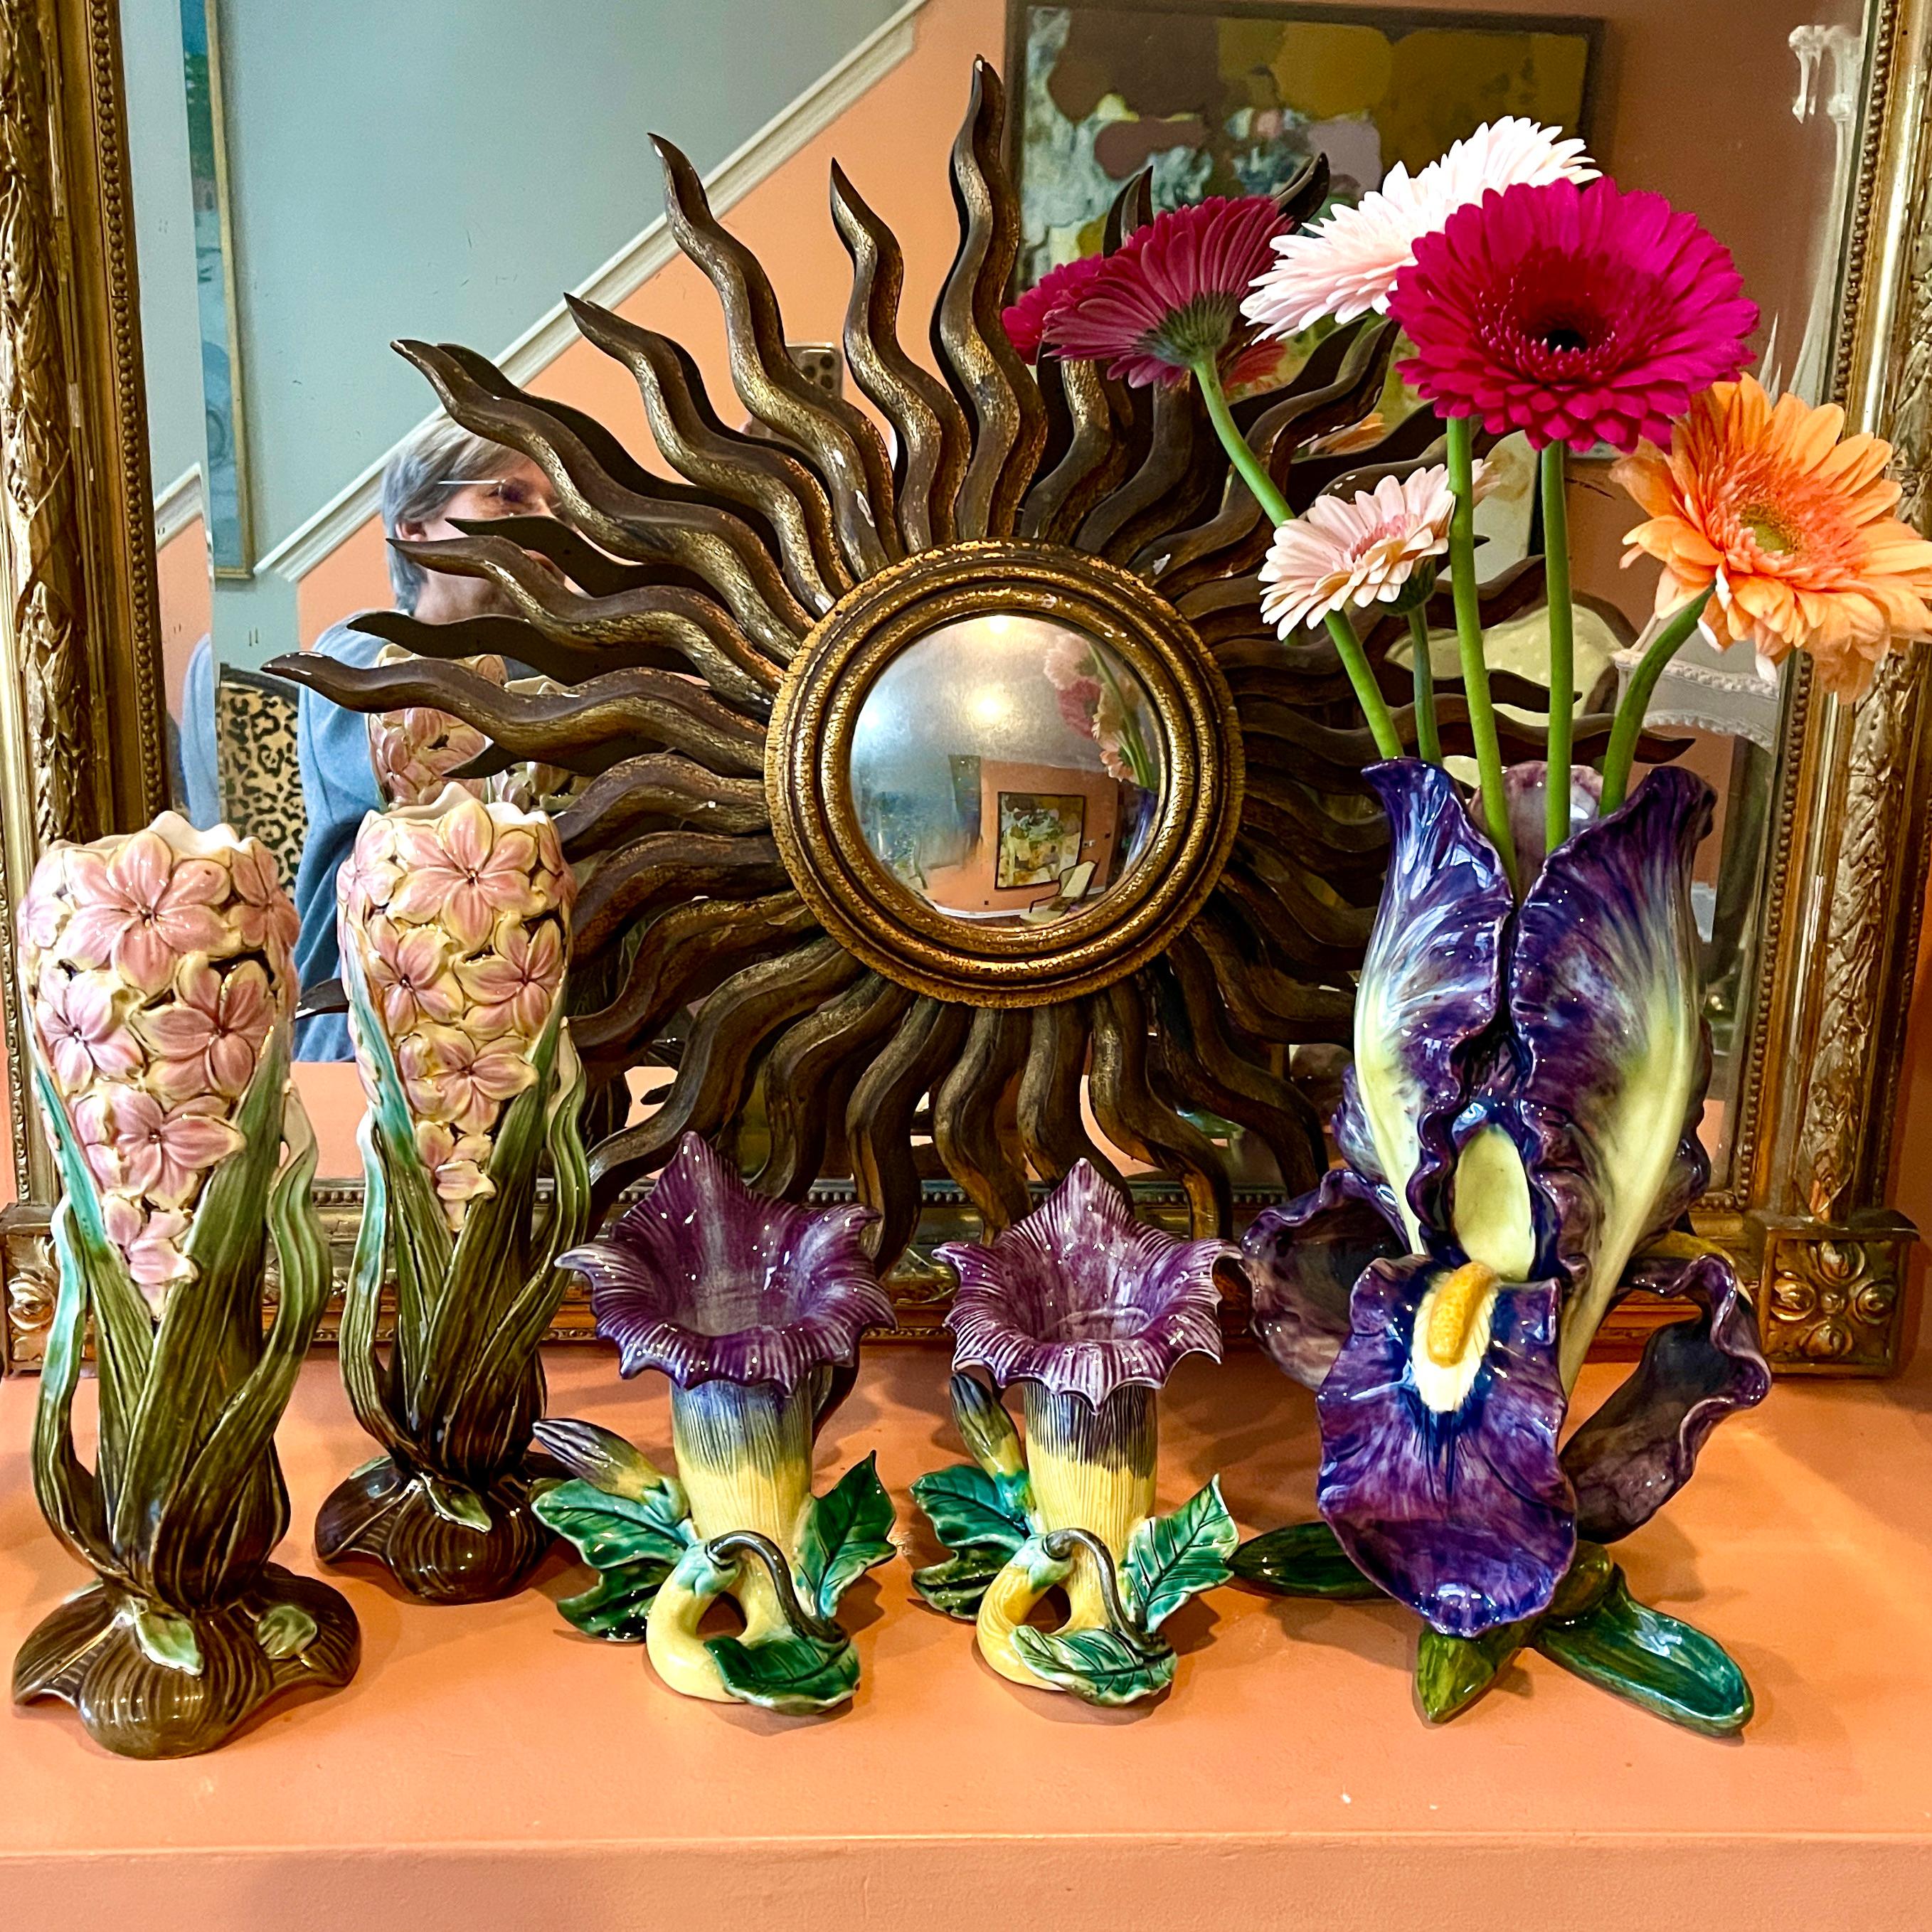 Grand vase en faïence émaillée de la fin du XIXe siècle, représentant un iris barbu. Trois pétales violets et jaunes en cascade entourent la tête de l'iris. La semelle est moulée sous forme de feuilles vertes et d'une tige brune coupée. Magnifique